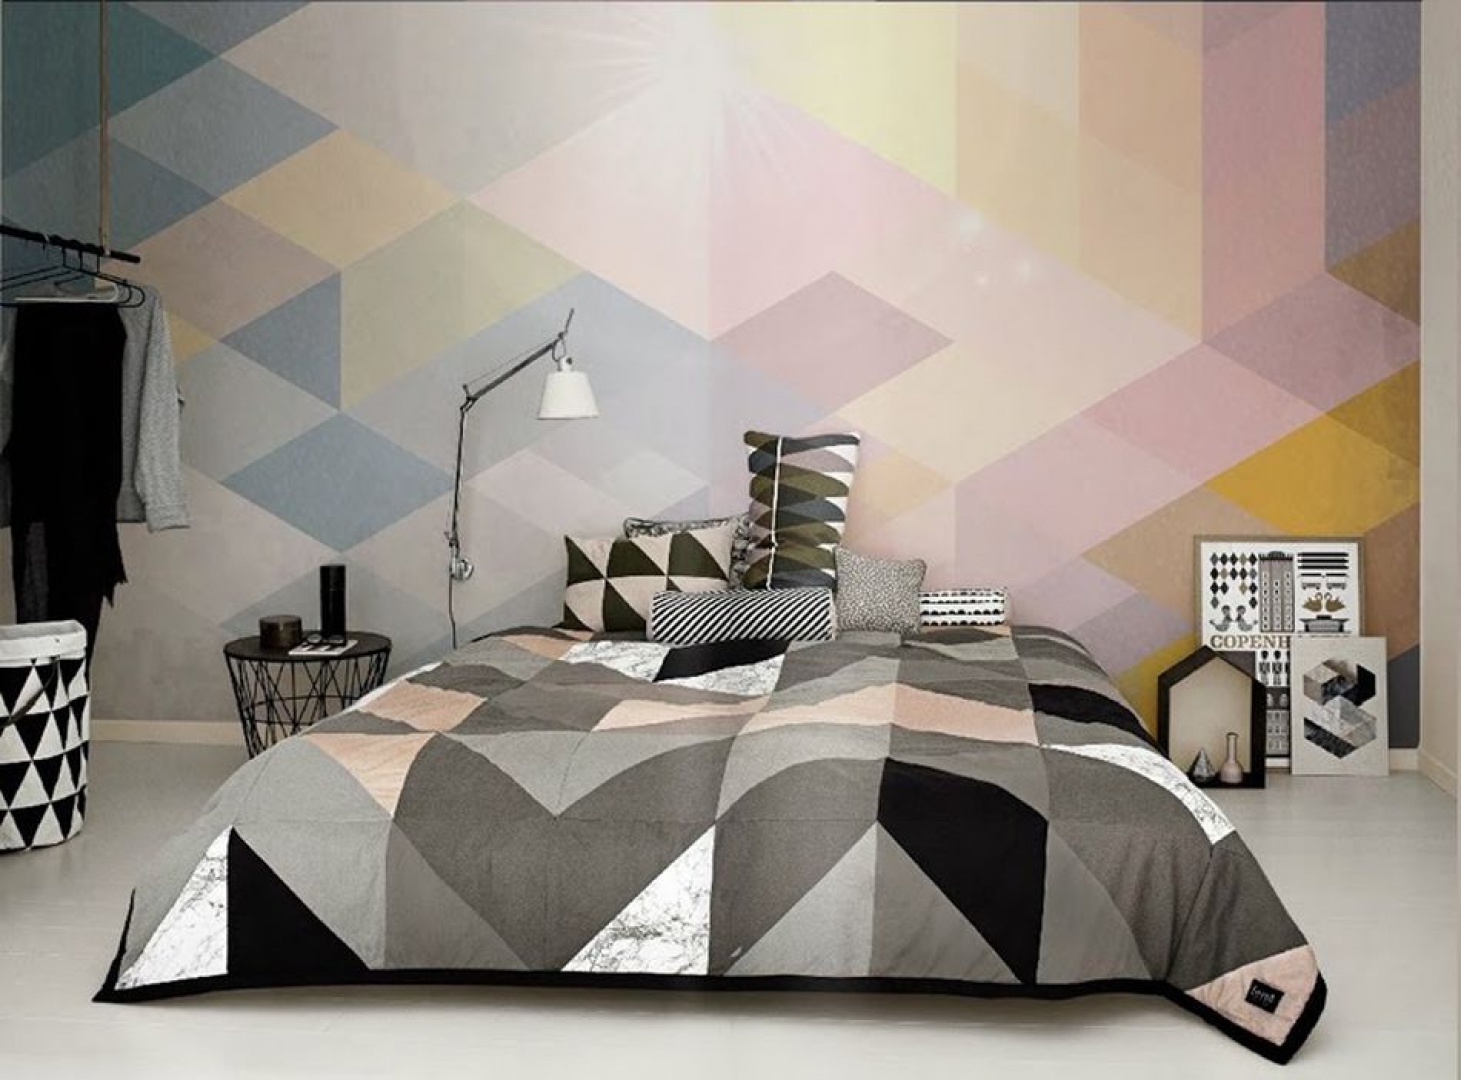 Kolorowa kompozycja umieszczona na ścianie za łóżkiem dodaje wnętrzu charakteru. Fot. Redro.